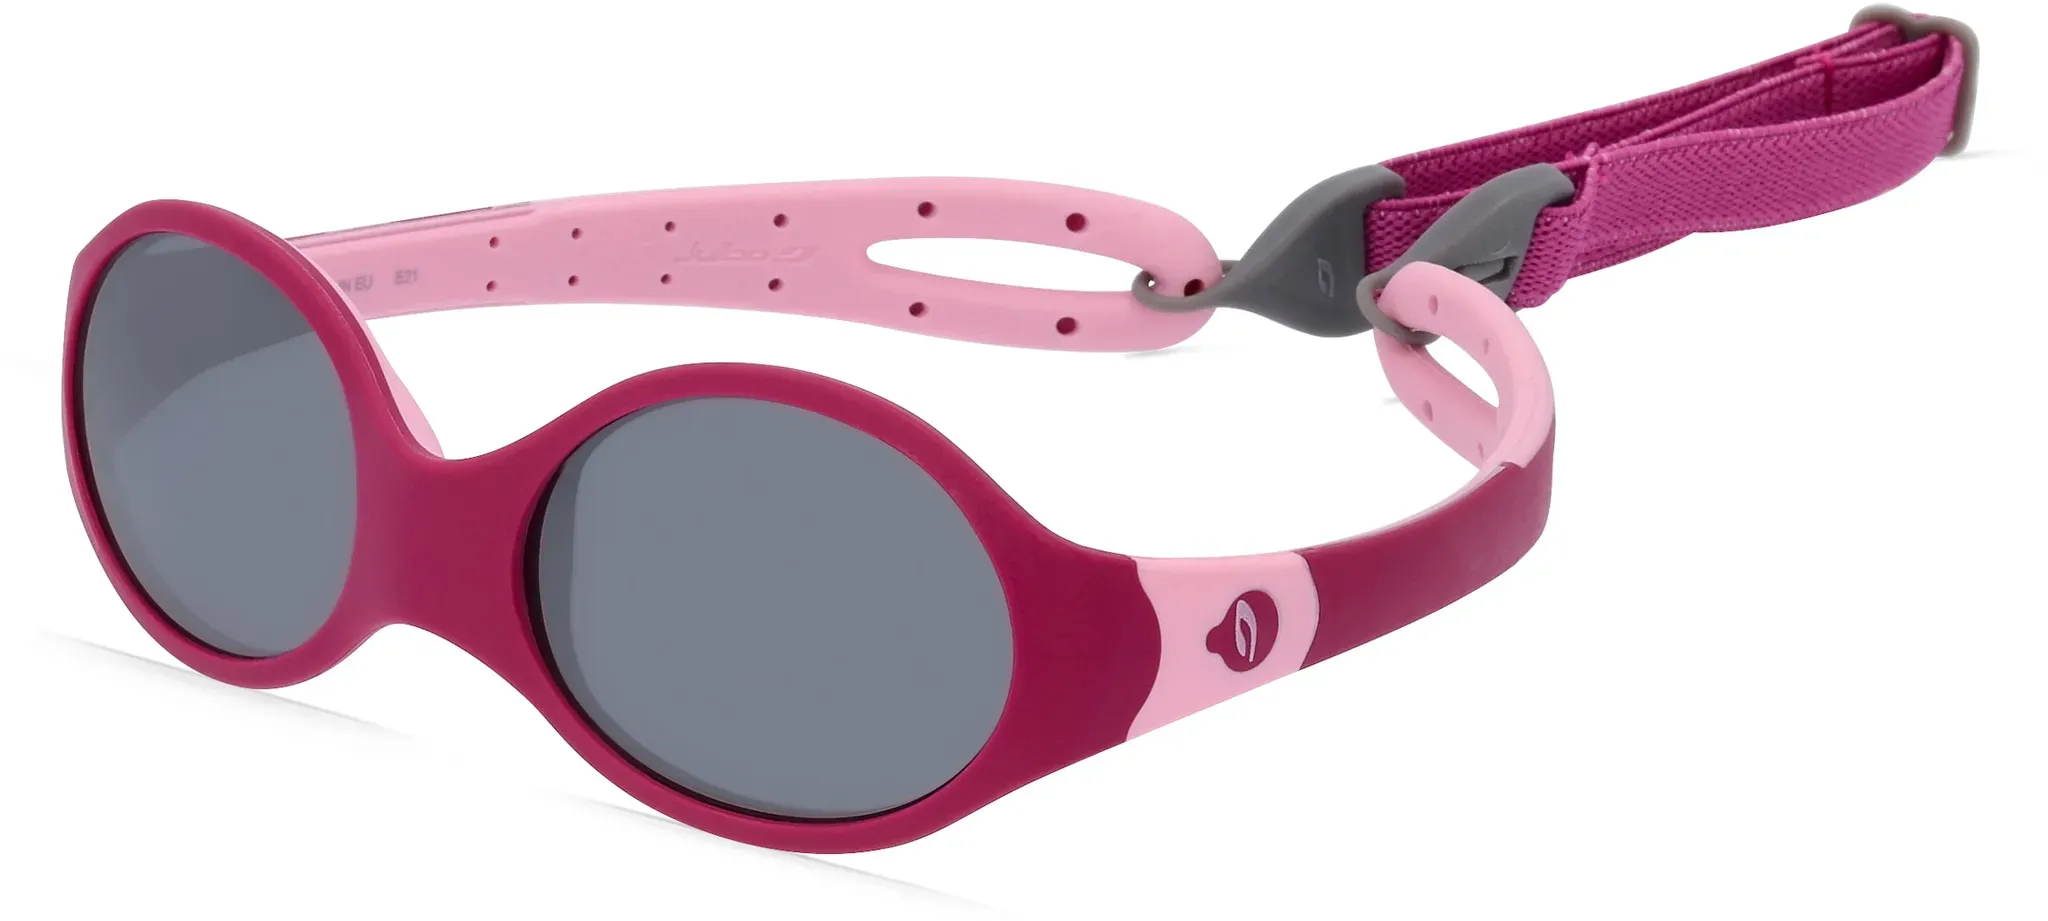 Julbo LOOP M J533 Kinder-Sonnenbrille Vollrand Oval Kunststoff-Gestell, pink